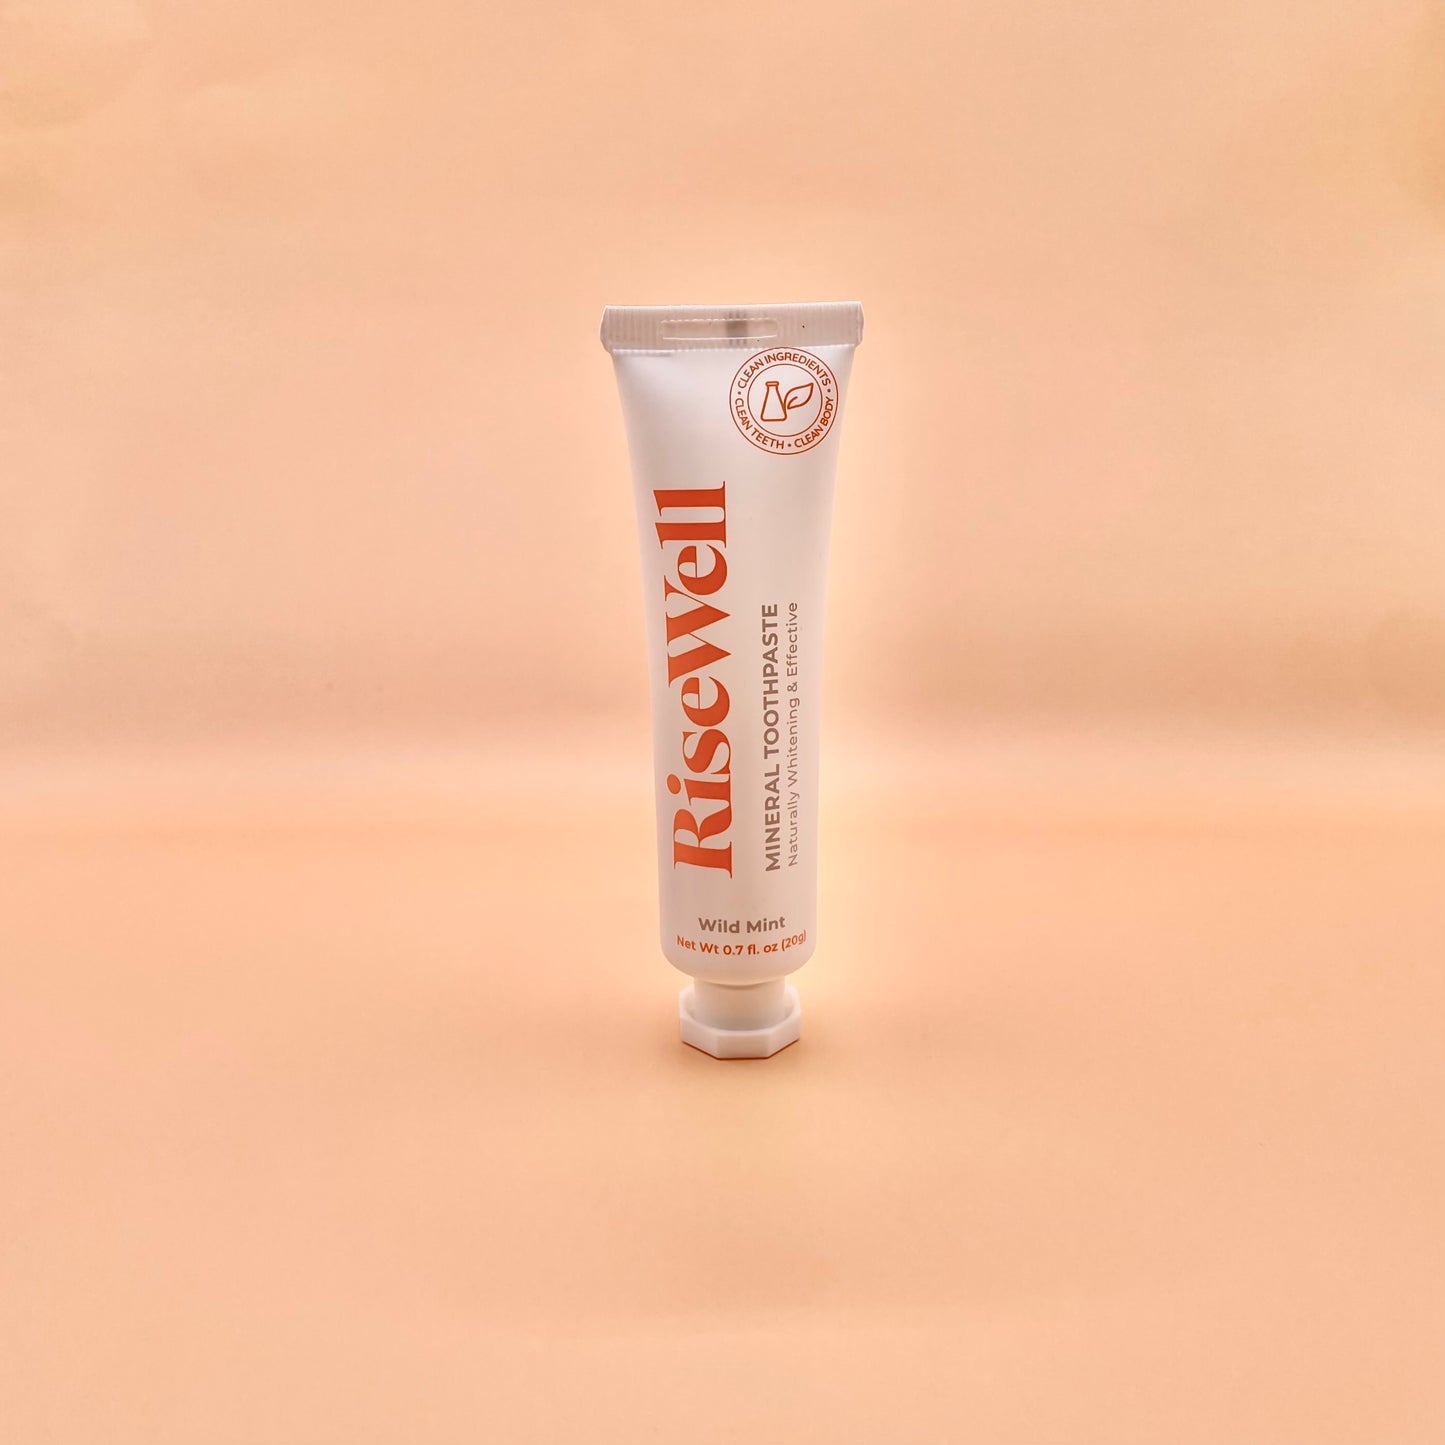 RiseWell pasta de dientes sin fluoruro de hidroxiapatita natural de menta salvaje